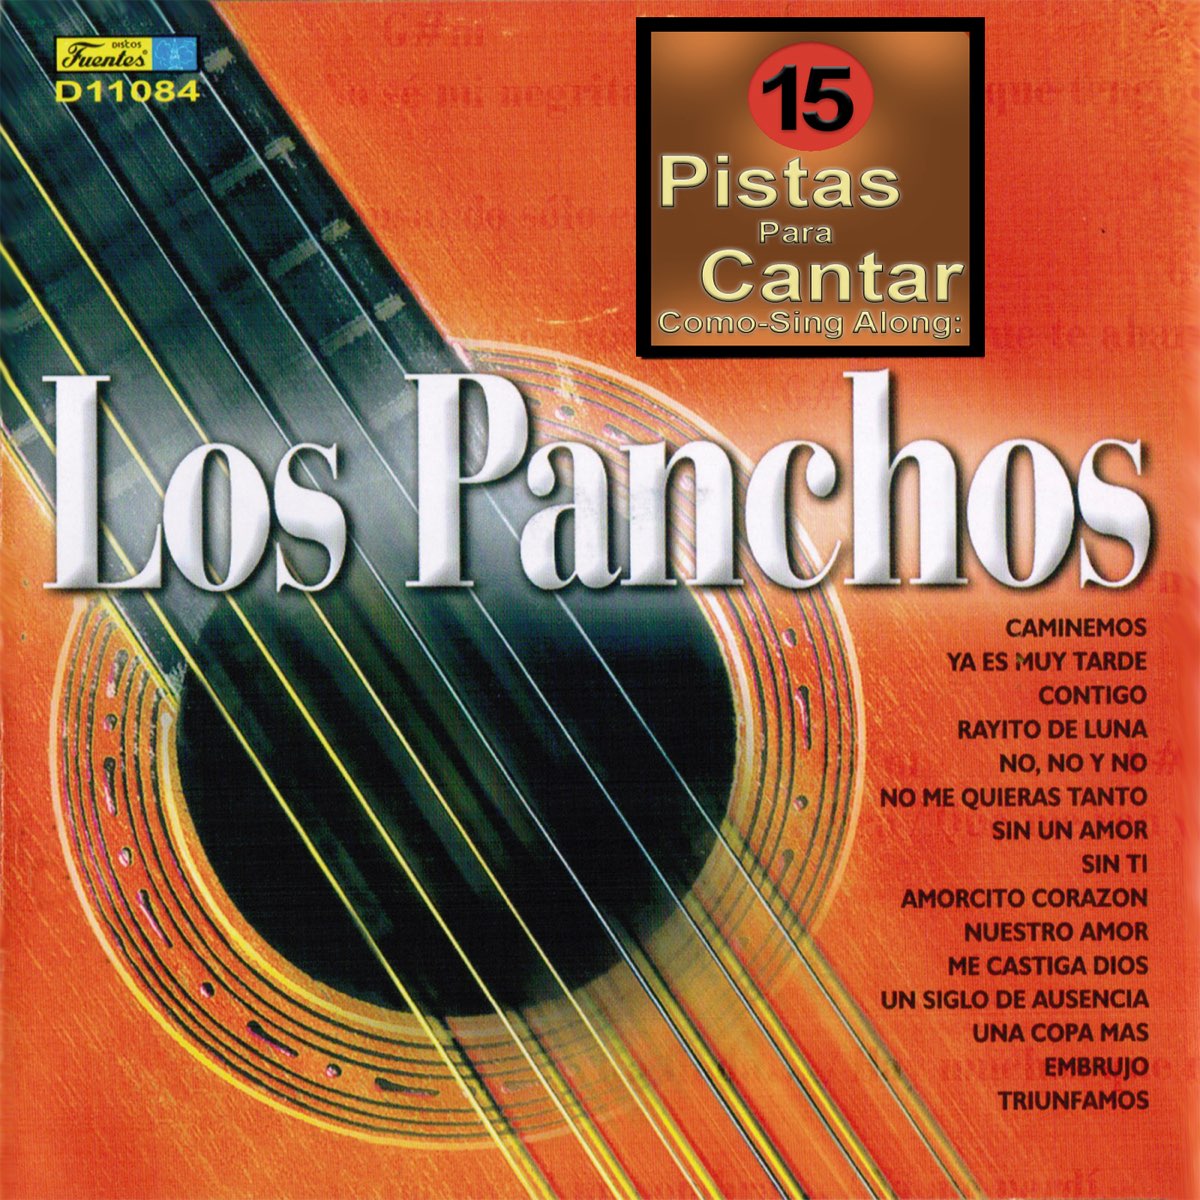 Cantar Como - Sing Along: Los Panchos par Los Liricos sur Apple Music